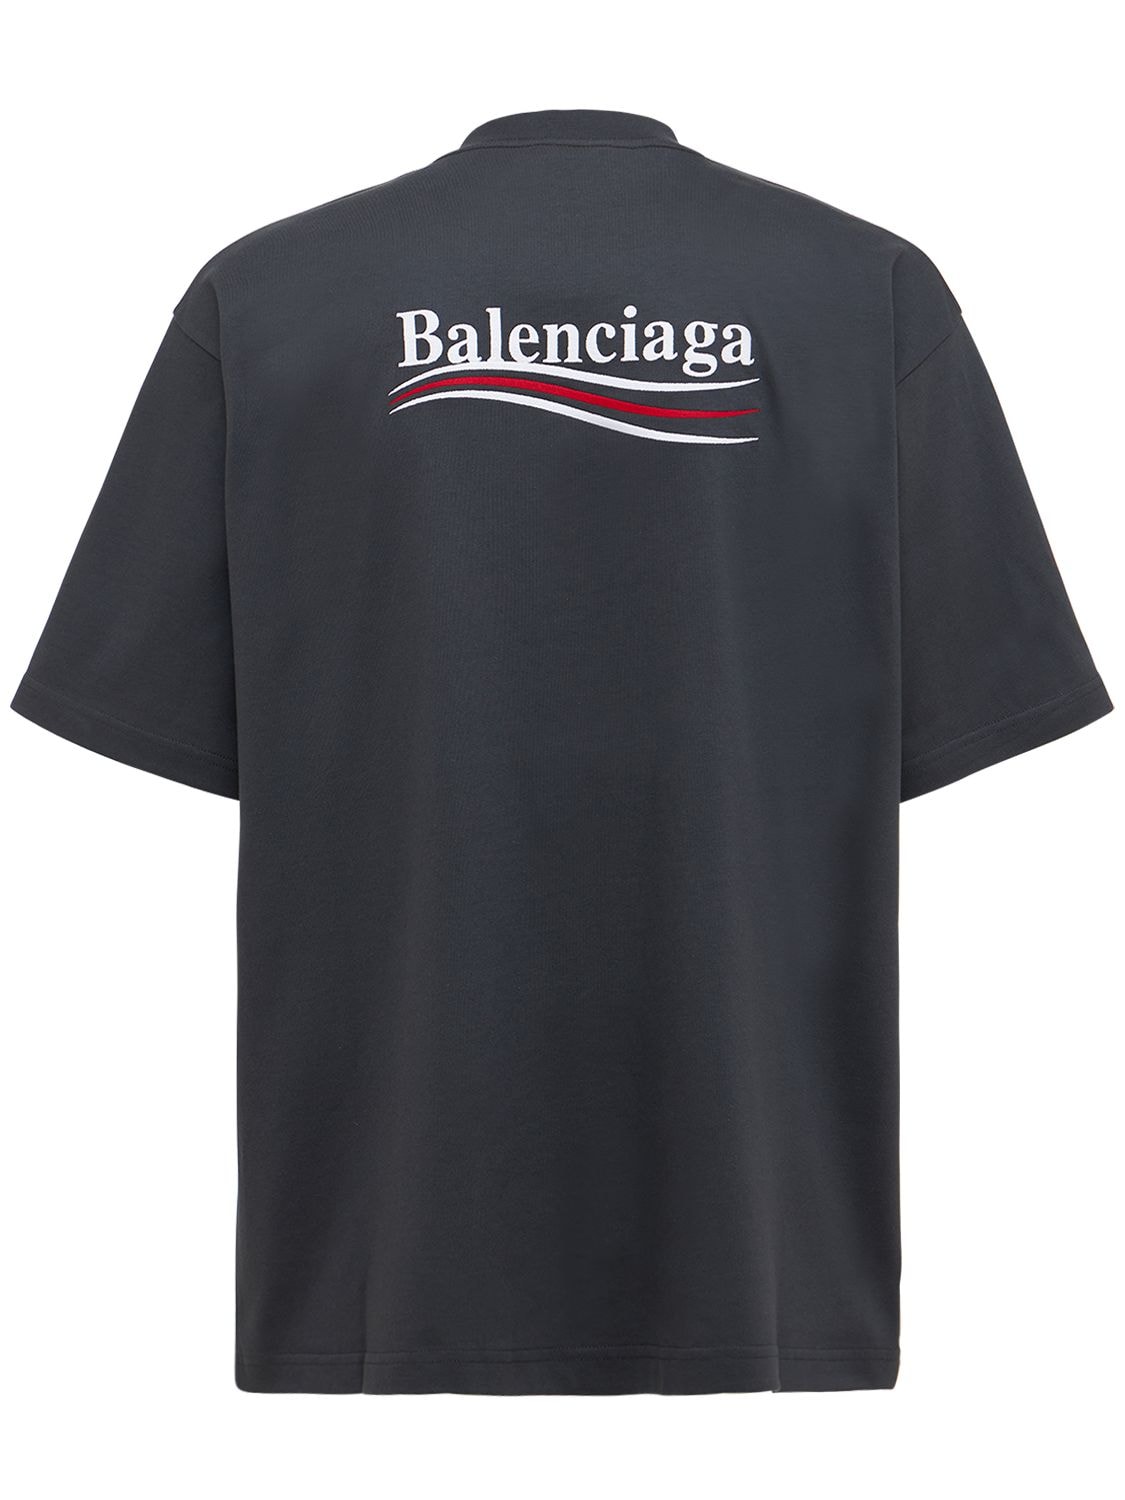 Balenciaga Cotton T-shirt In Dark Grey